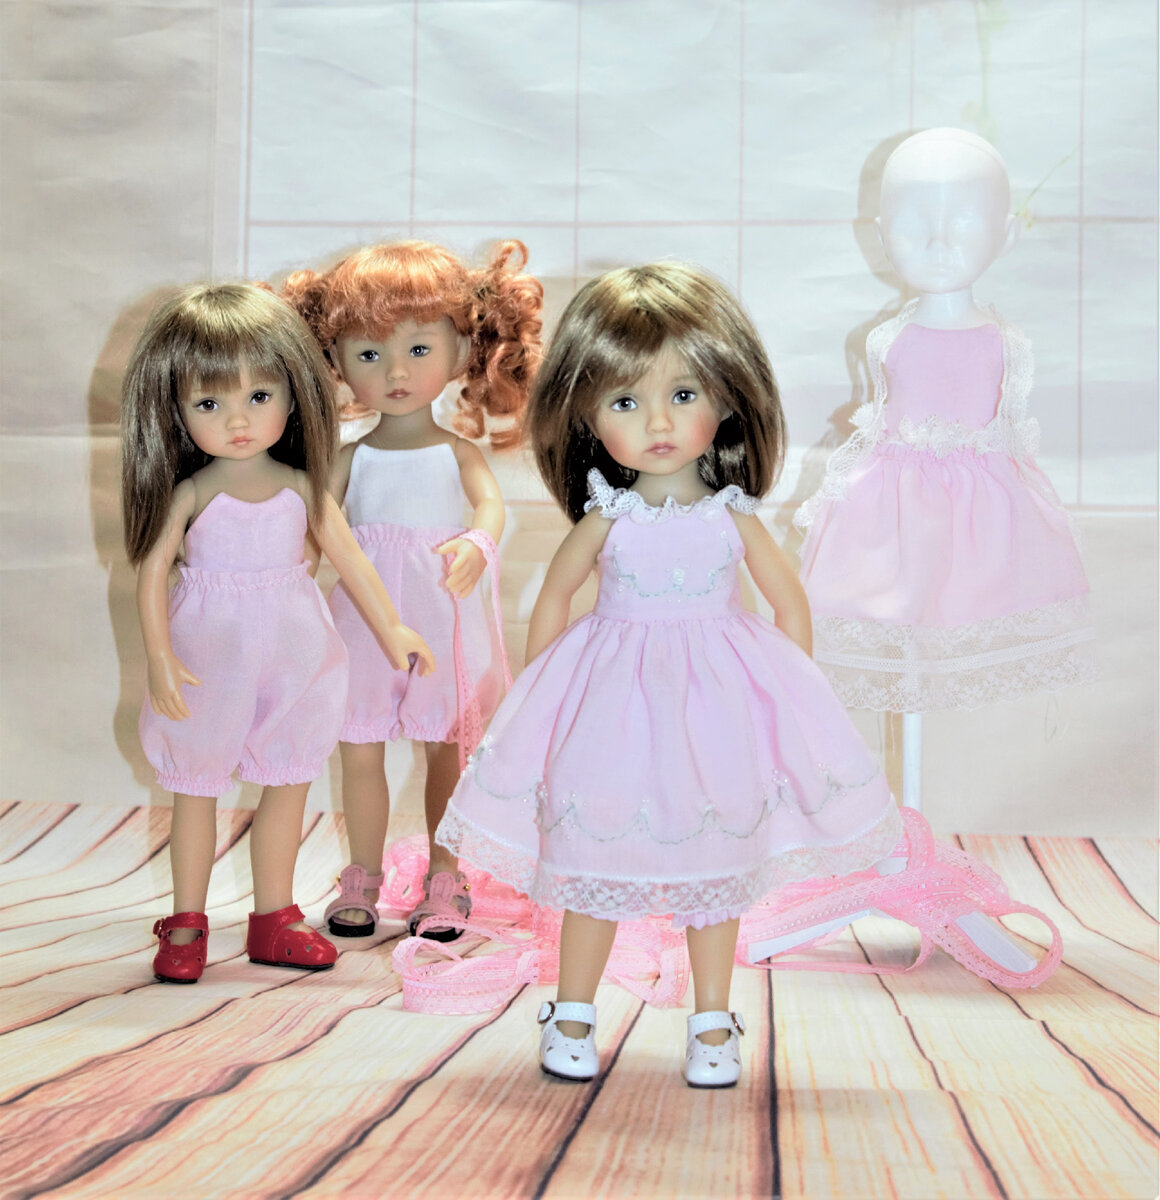 На 3 куколки больше. Три куклы. Три куколки фото. Куклы сестрички рыжие. Три куклы с тёмными волосами у одной из них светлые.